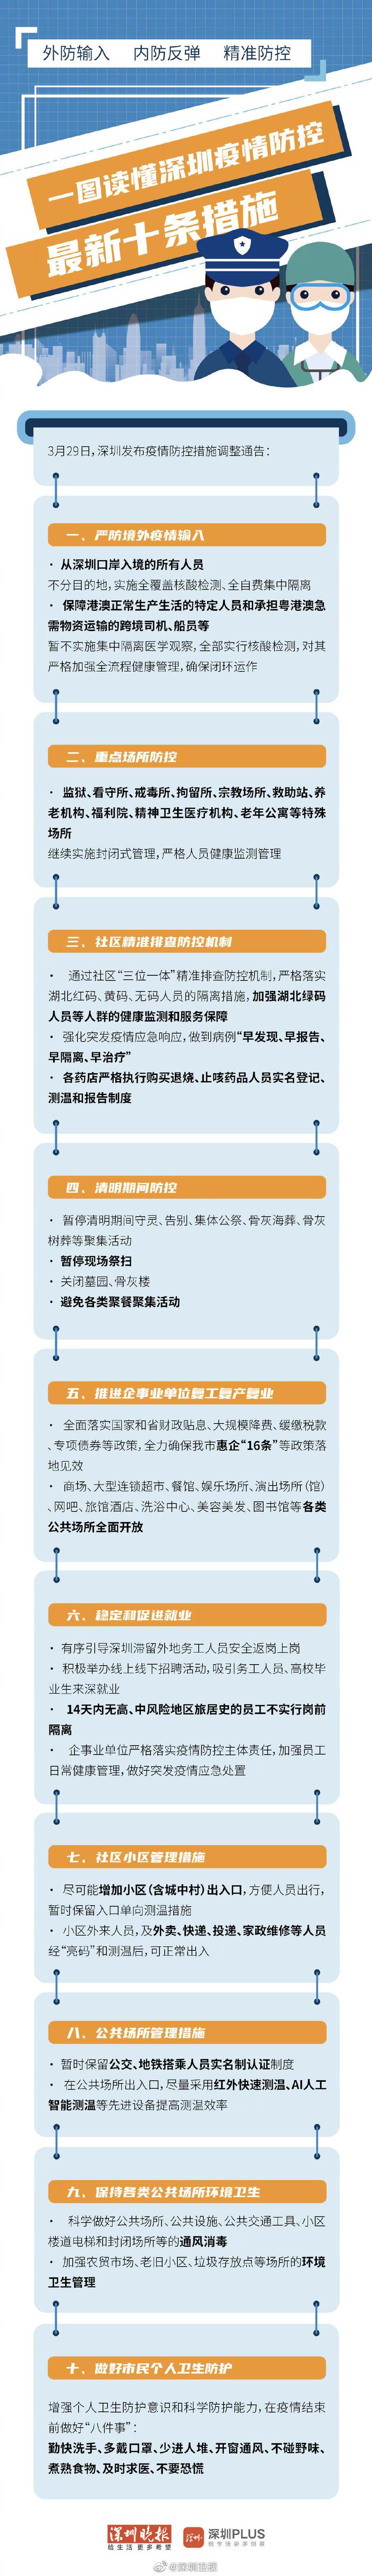 一图读懂 | 深圳疫情防控最新十条措施